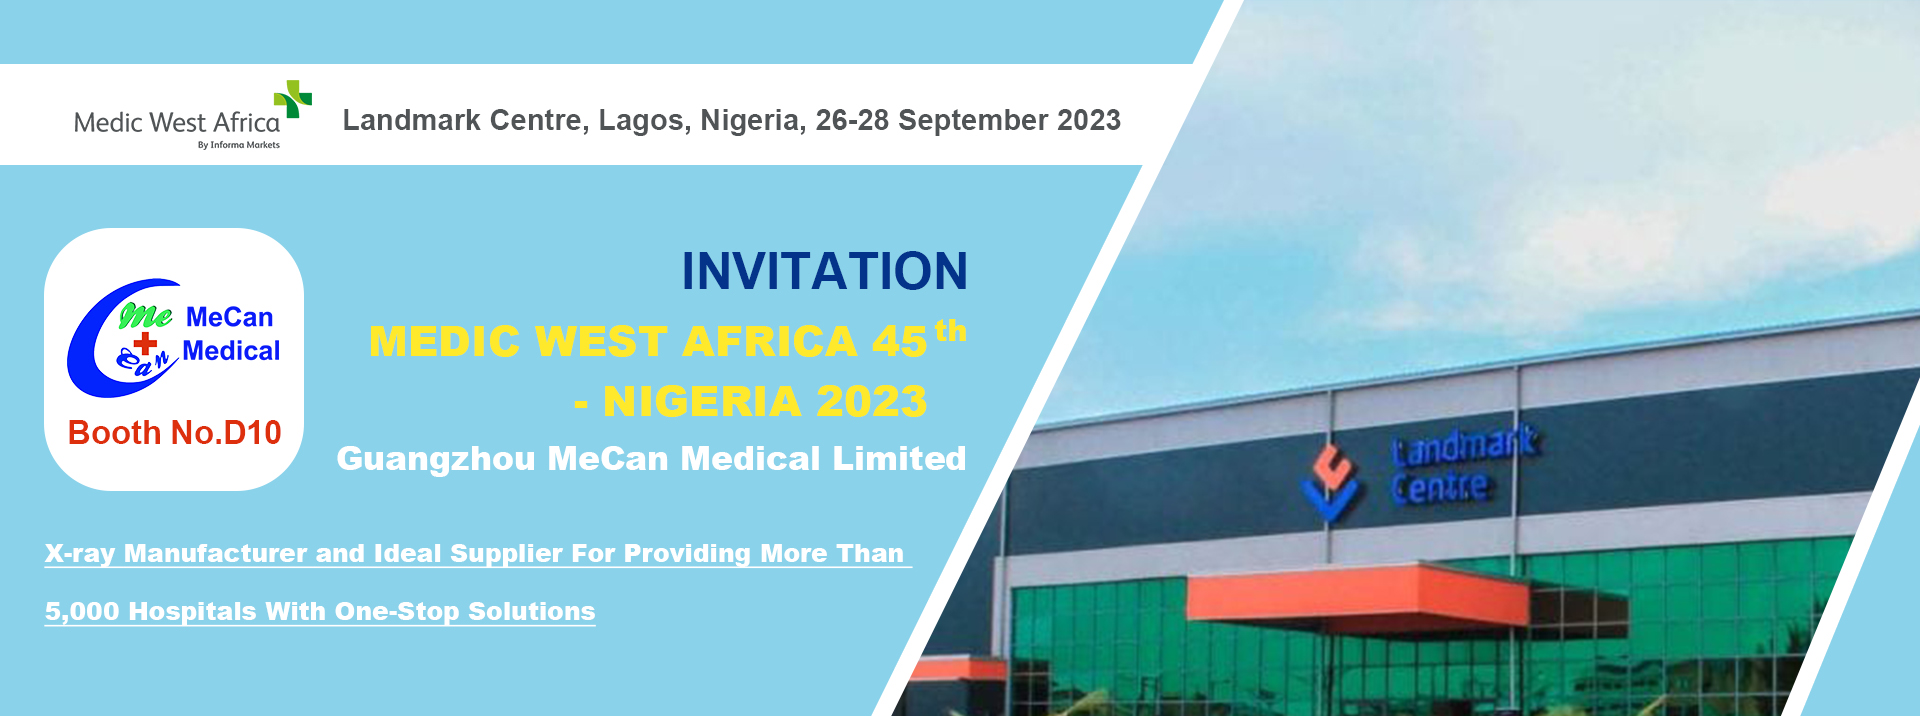 MeCan Medical hos Medic West Africa 45th i Nigeria